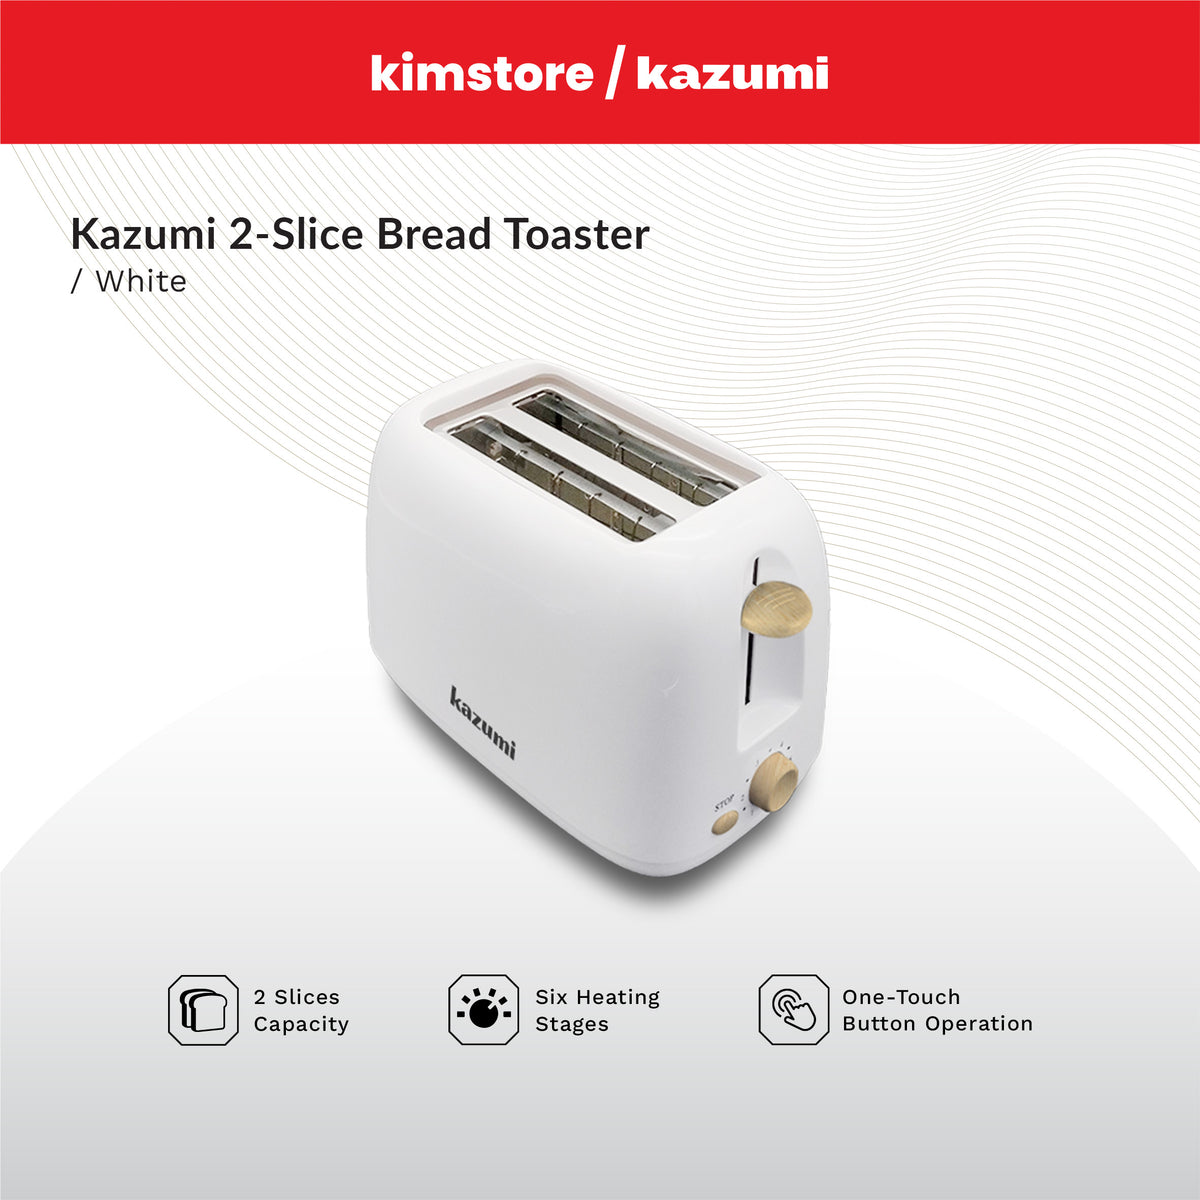 Kazumi 2-Slice Bread Toaster